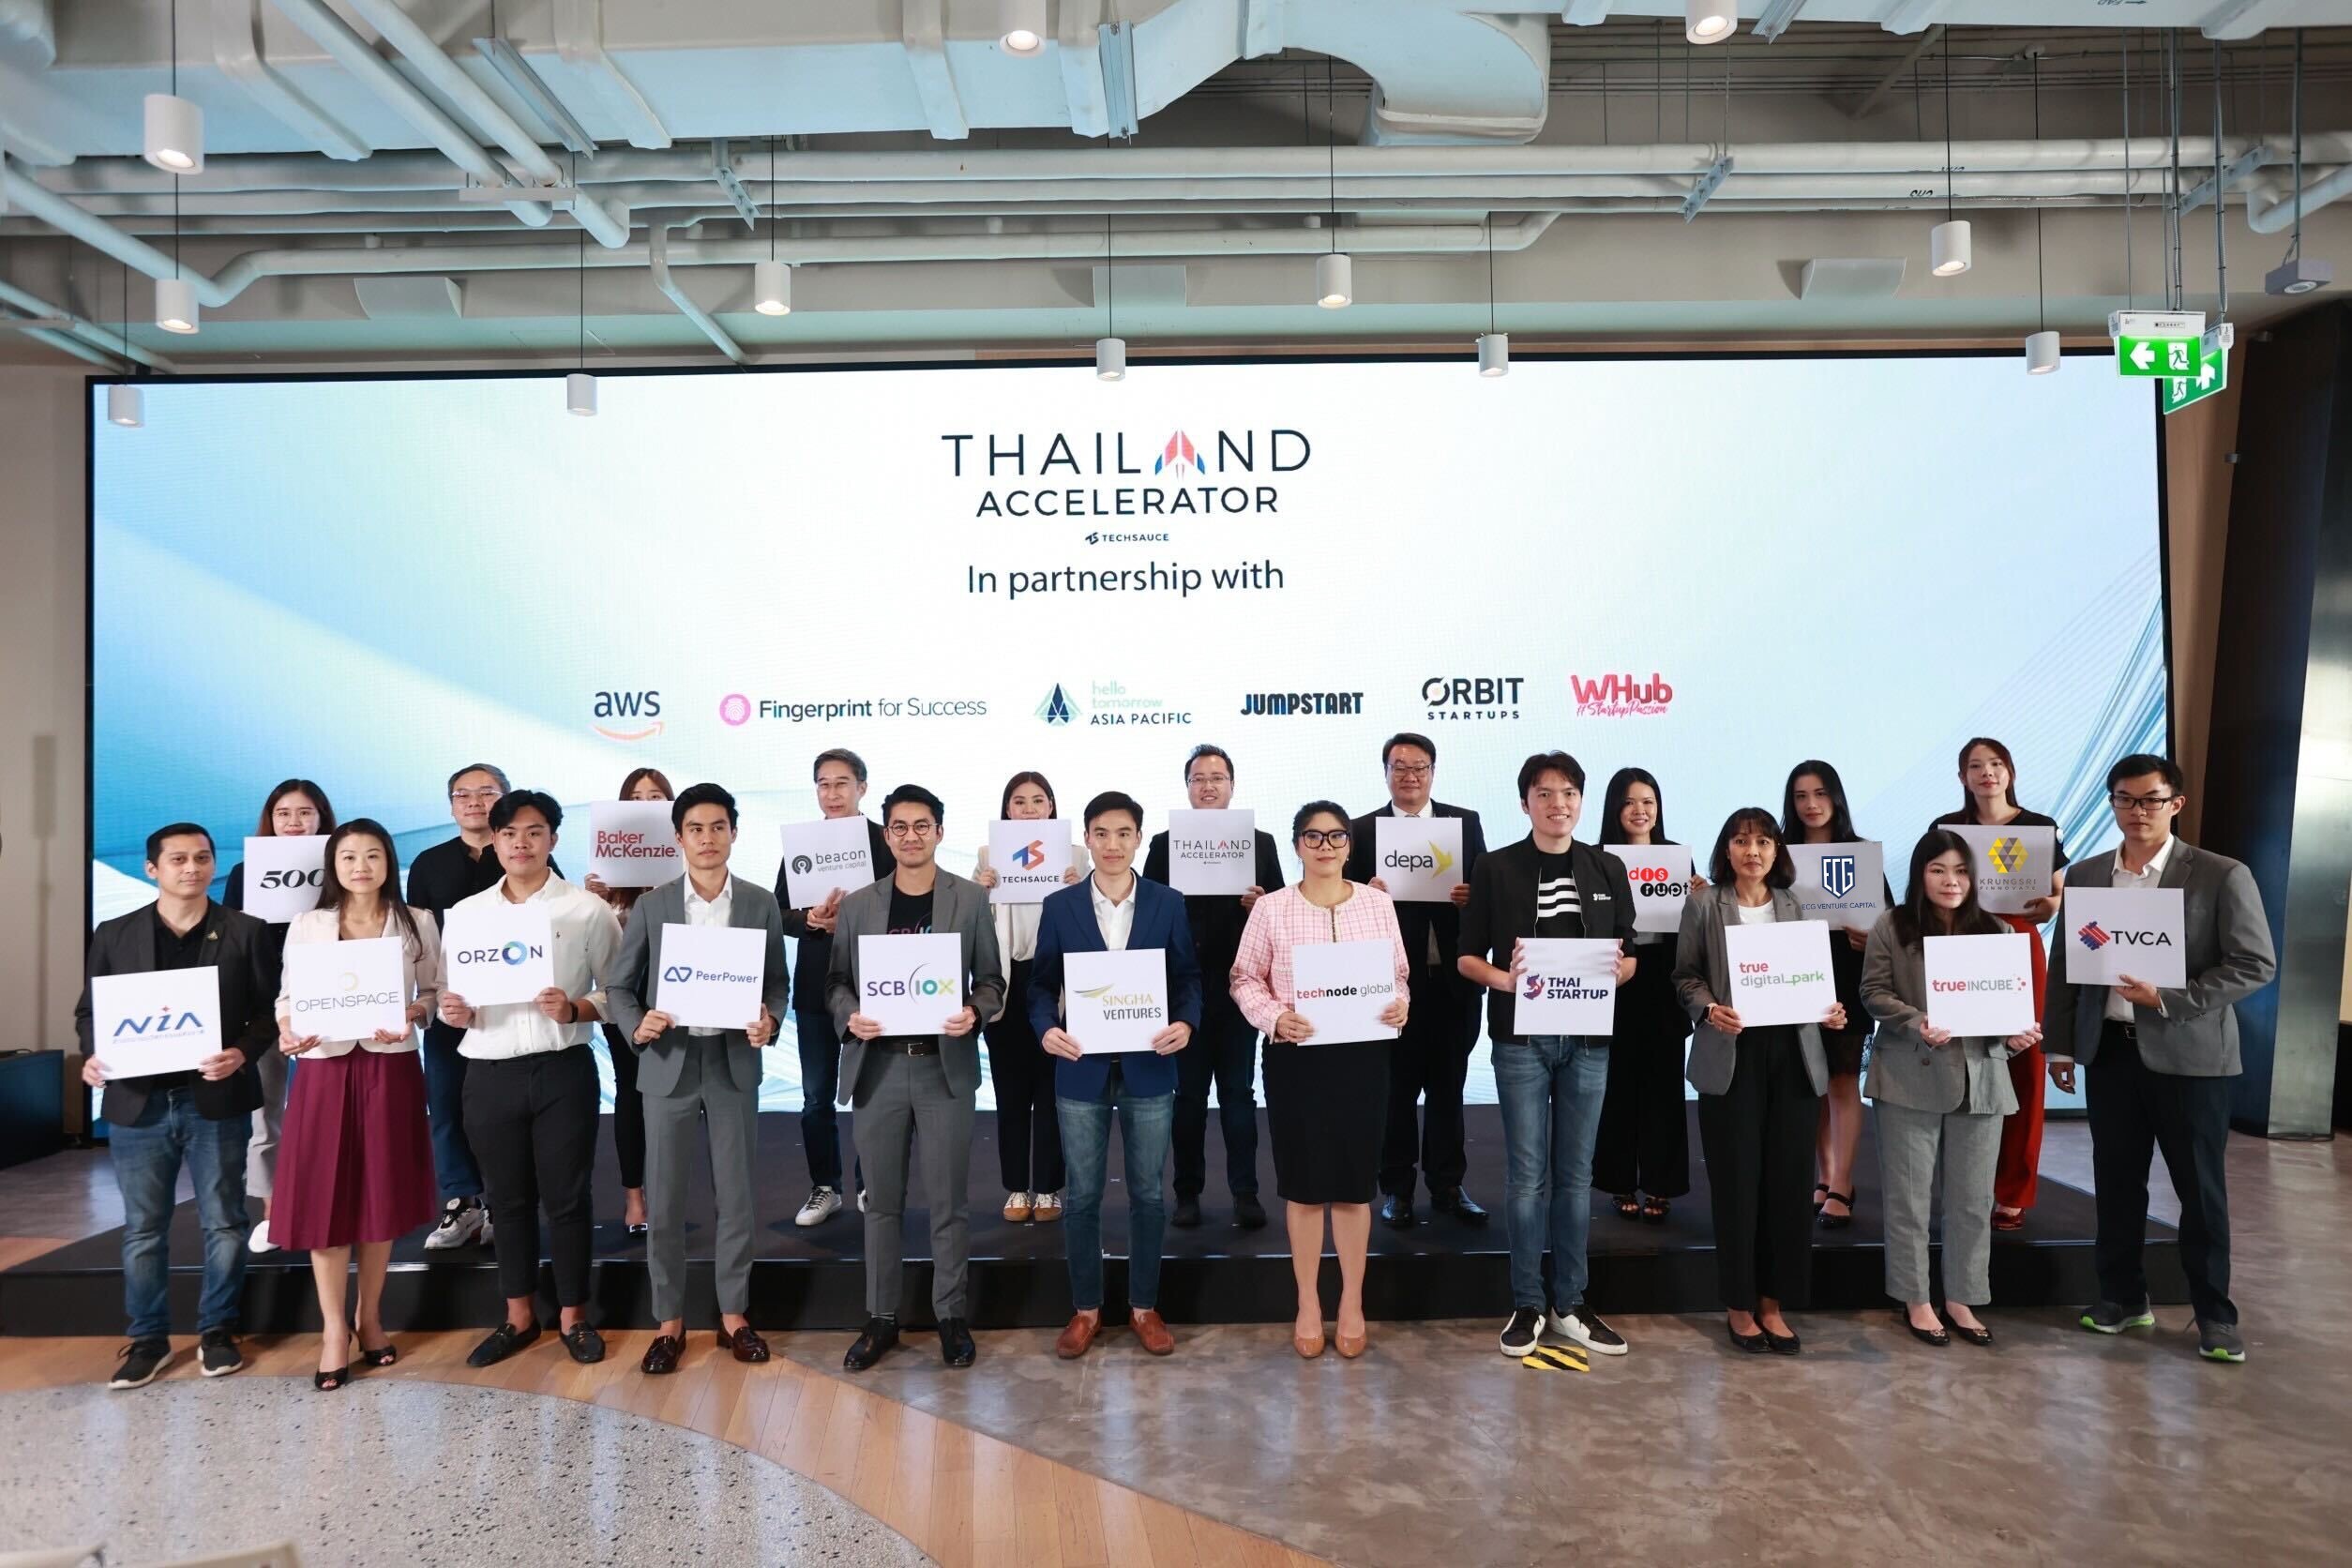 เปิดตัวโครงการ "Thailand Accelerator" มุ่งเน้นช่วยสตาร์ทอัพระดมทุน เร่งการเติบโตอย่างแข็งแกร่งพร้อมผนึก 25 พันธมิตร ผลักดันสตาร์ทอัพสู่เวทีระดับภูมิภาค